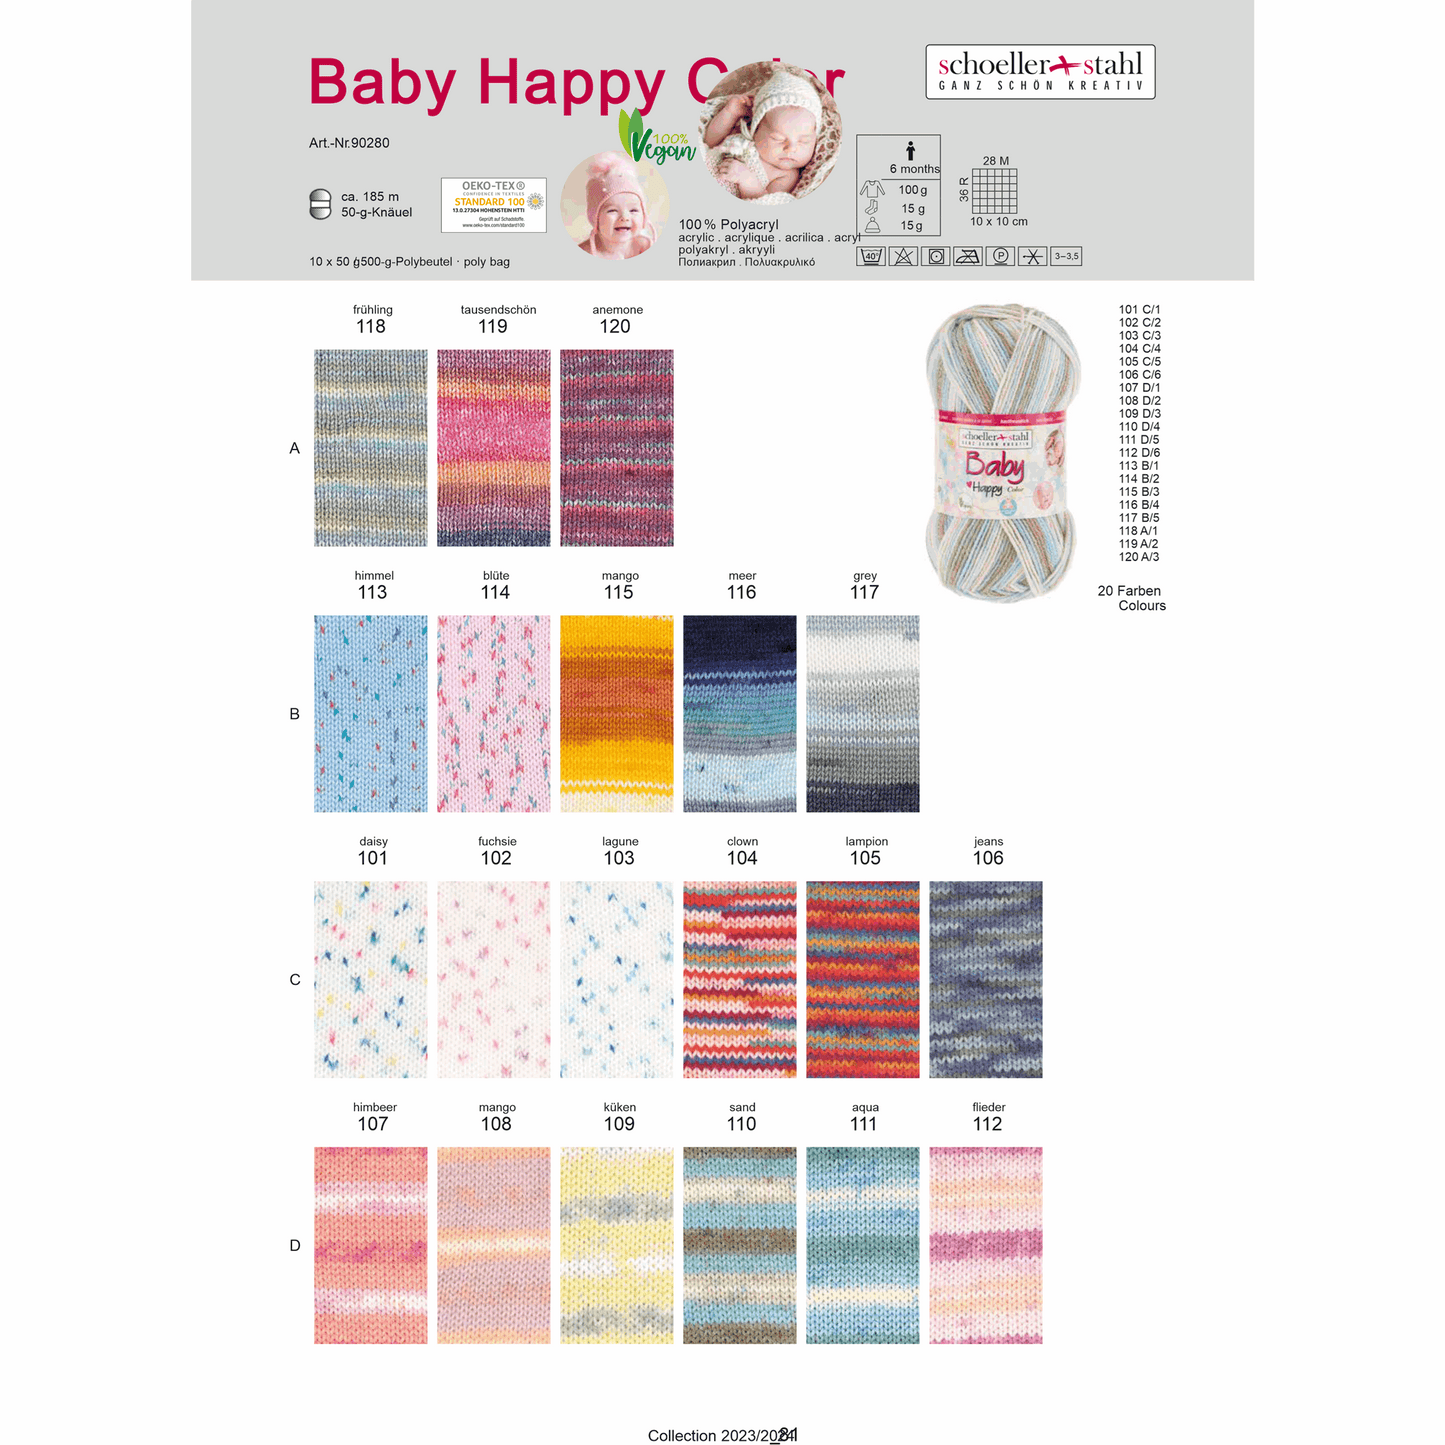 Baby happy color 50g, 90280, Farbe 111, aqua